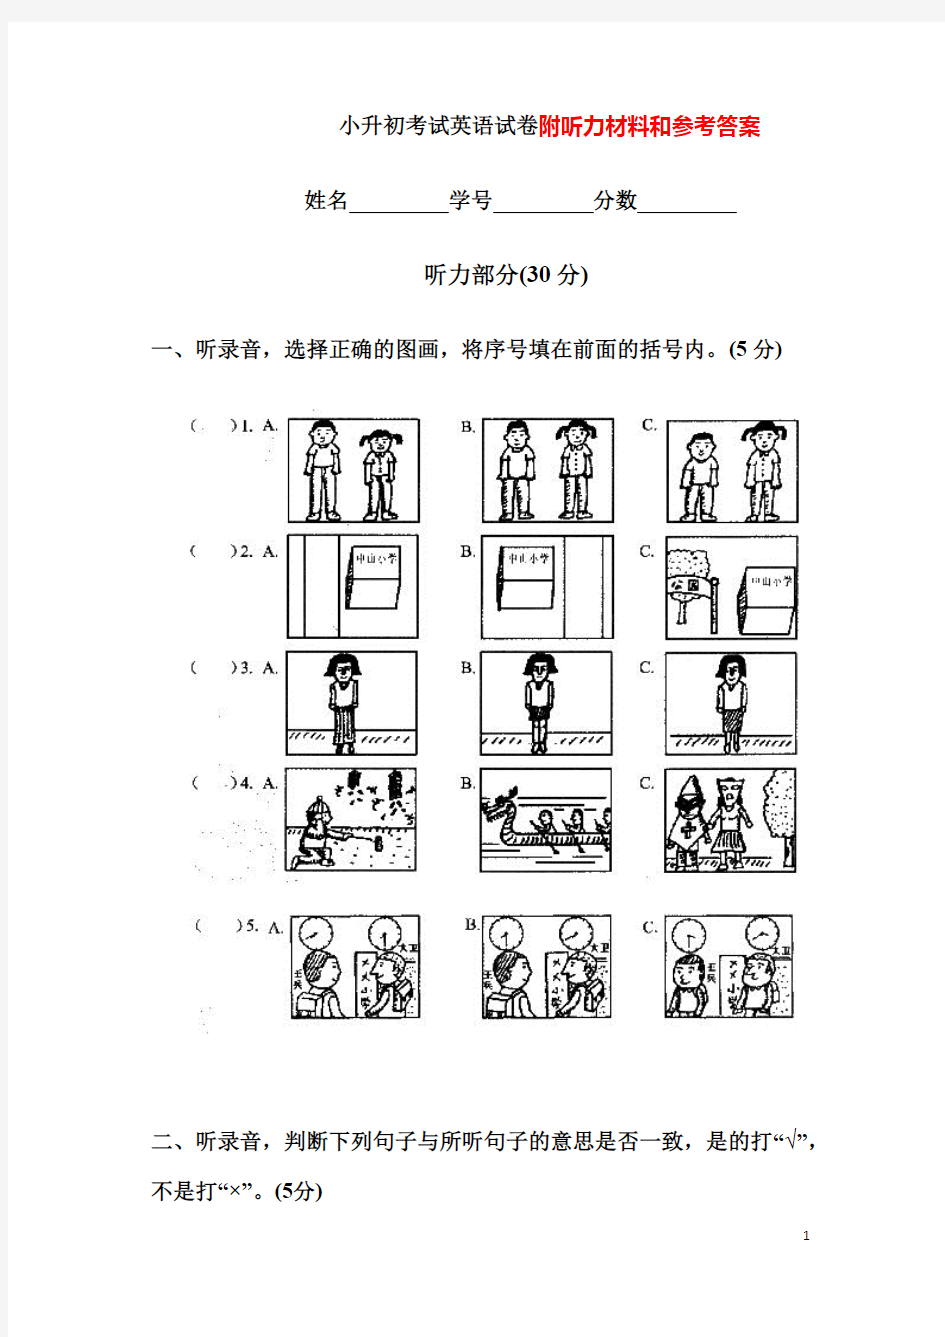 (完整版)南京小升初考试英语试卷